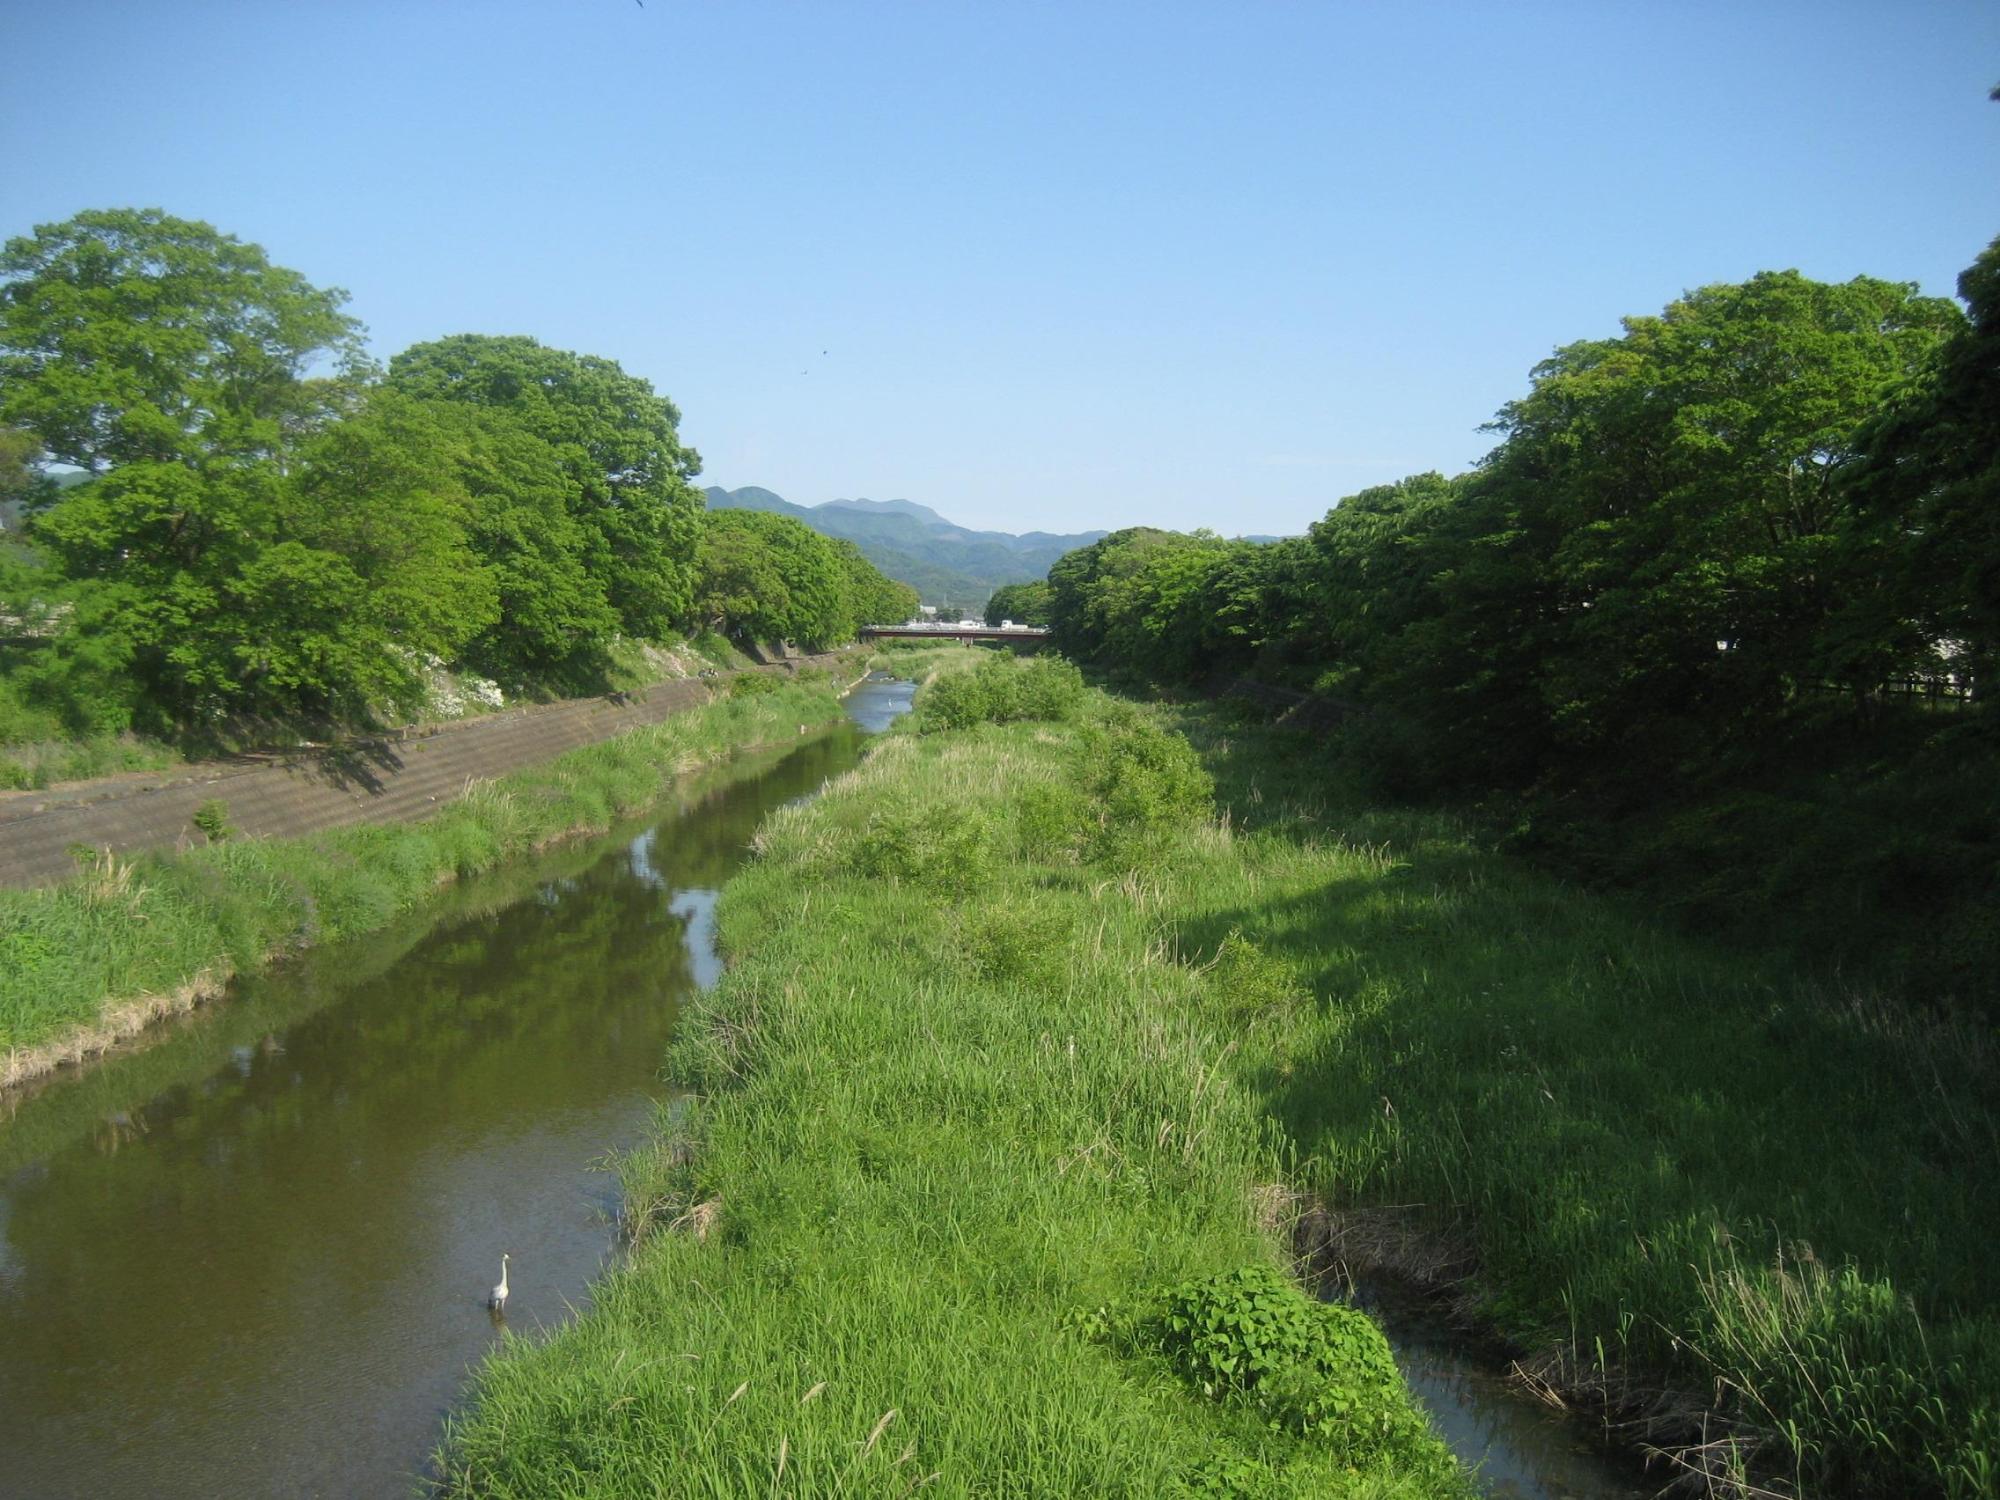 両側に木が生い茂る河川の写真